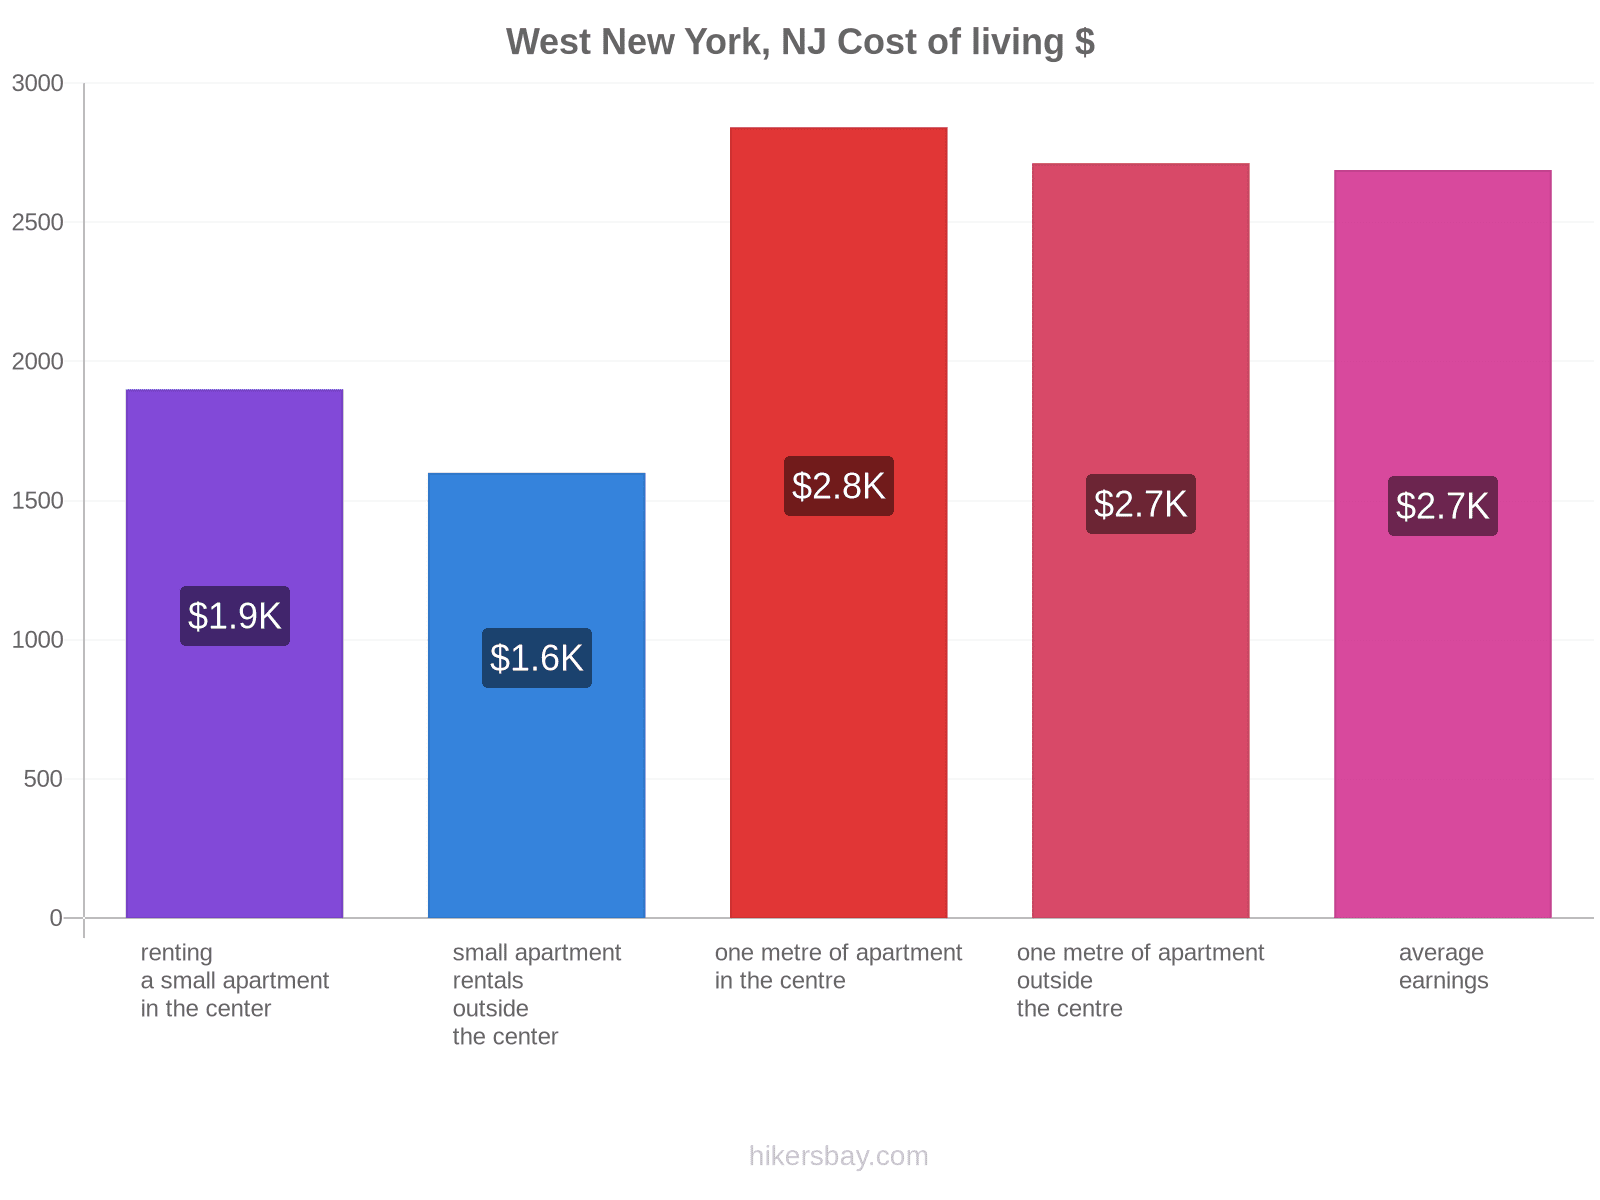 West New York, NJ cost of living hikersbay.com